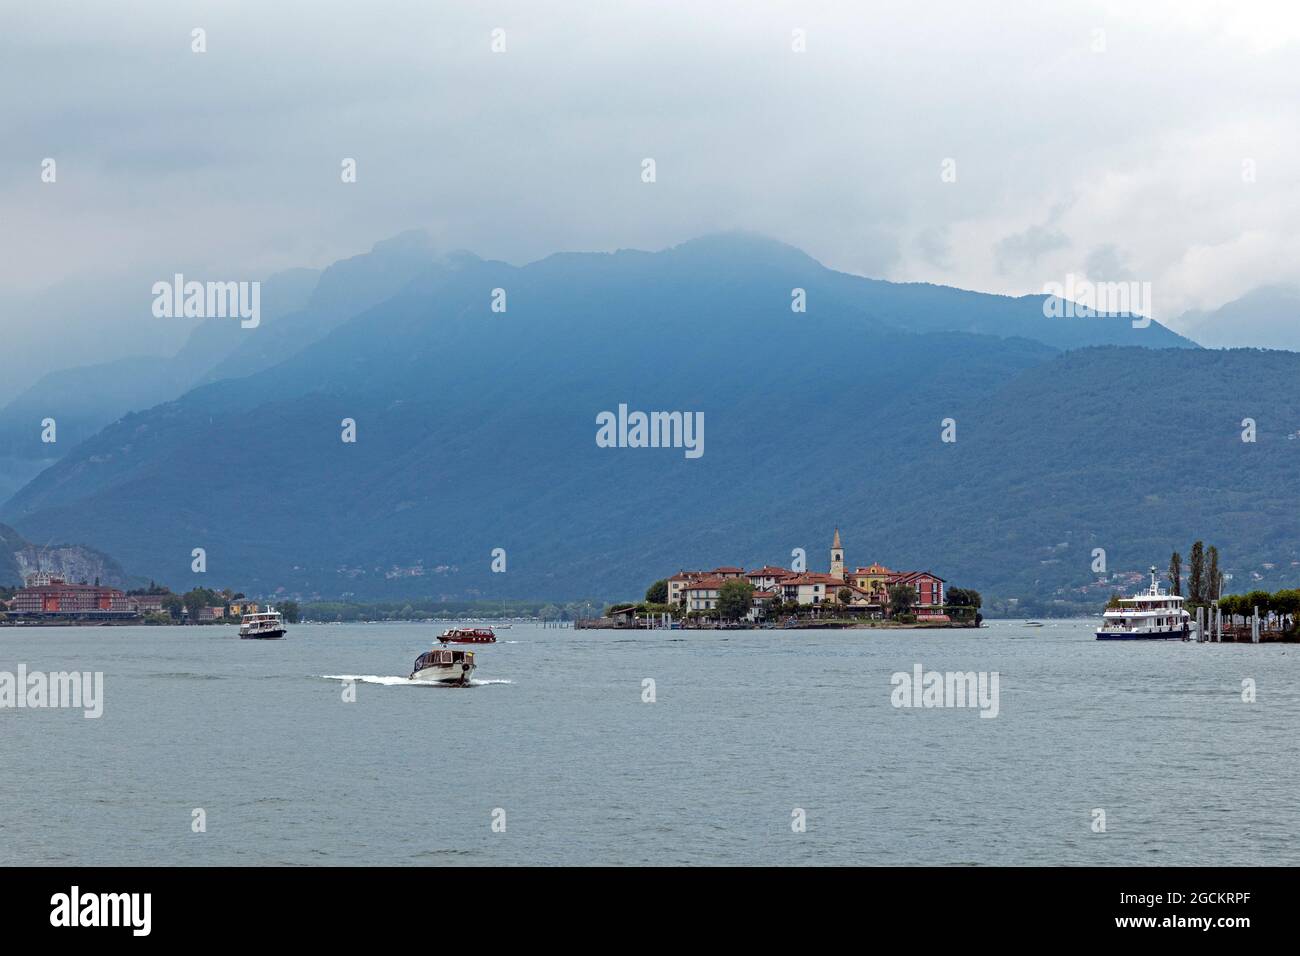 Isola dei Pescatori, Stresa, Lake Maggiore, Piedmont, Italy Stock Photo